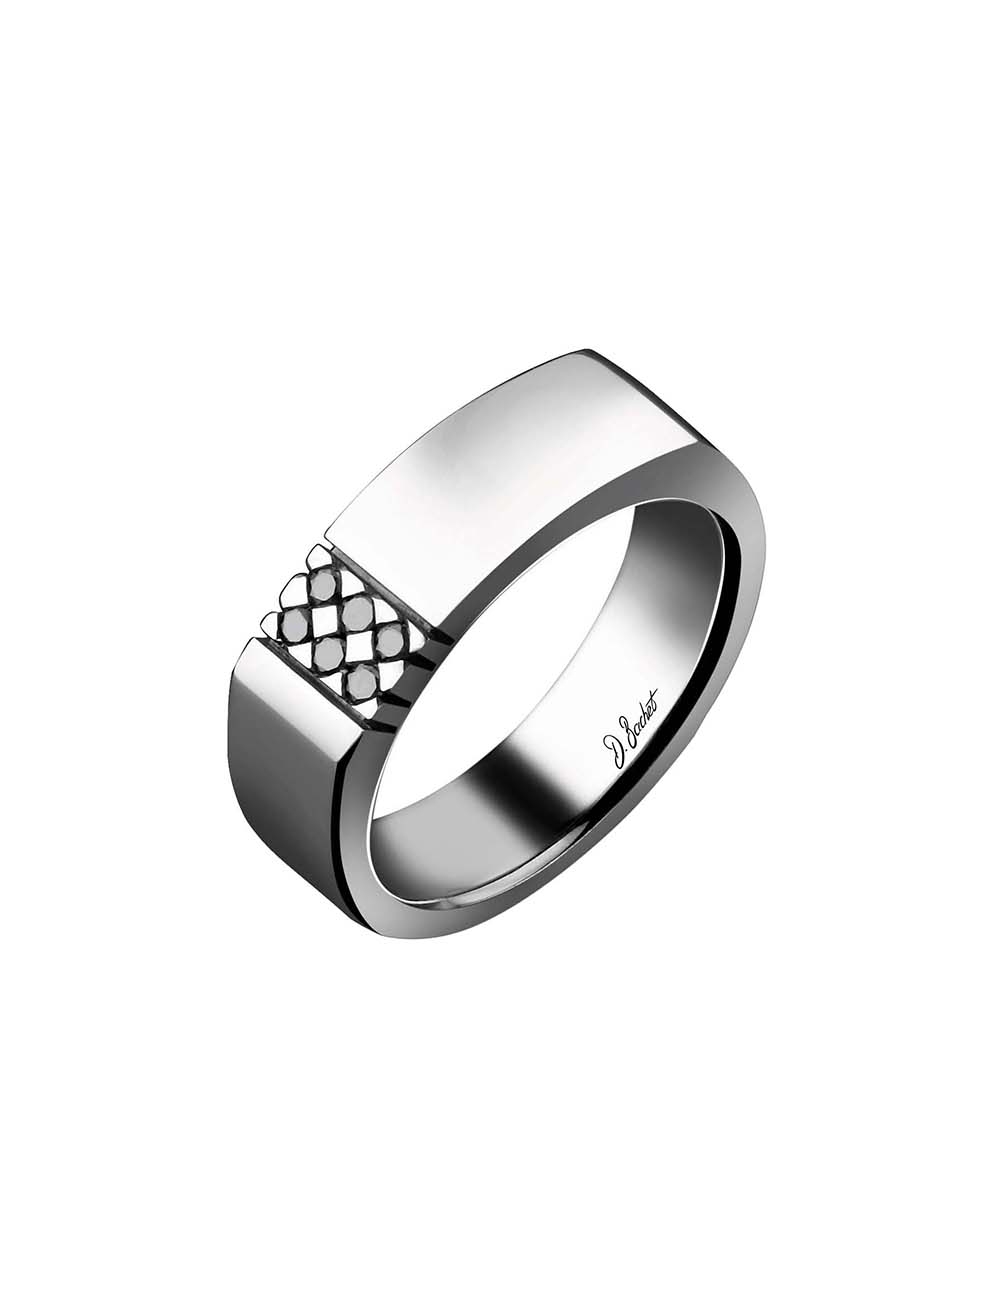 Luxury signet ring for men in black diamonds